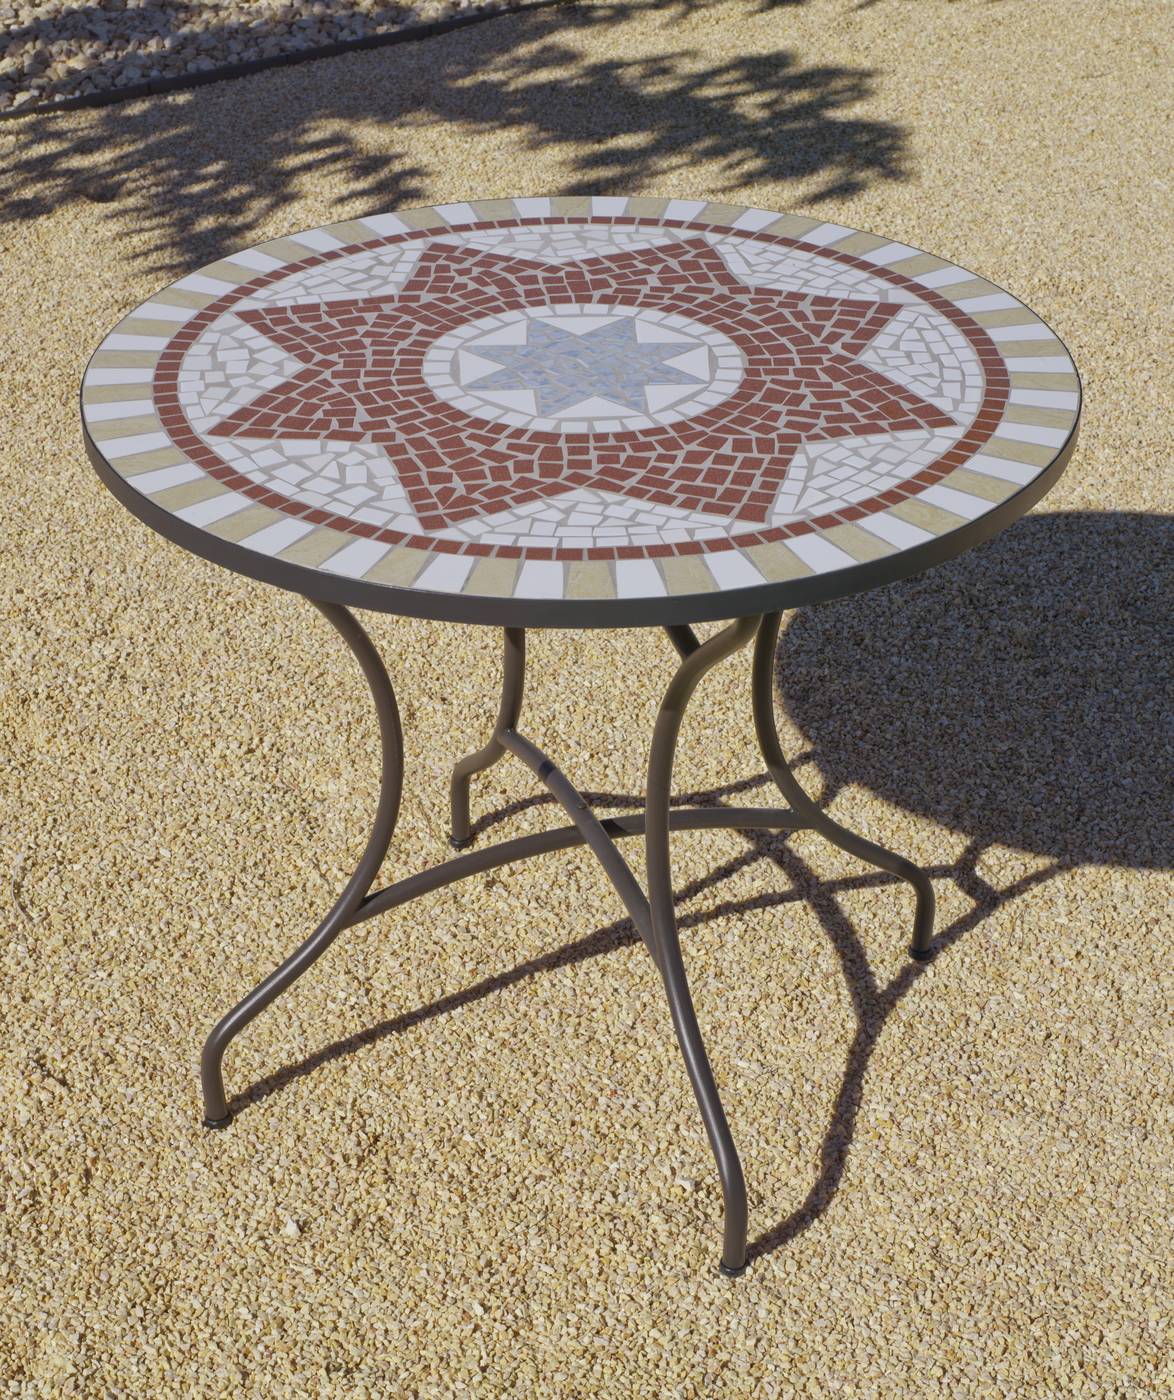 Conjunto Mosaico Aney-Vigo 100-4 - Conjunto de acero forjado color bronce: 1 mesa de forja con panel mosaico + 4 sillones de forja con cojines